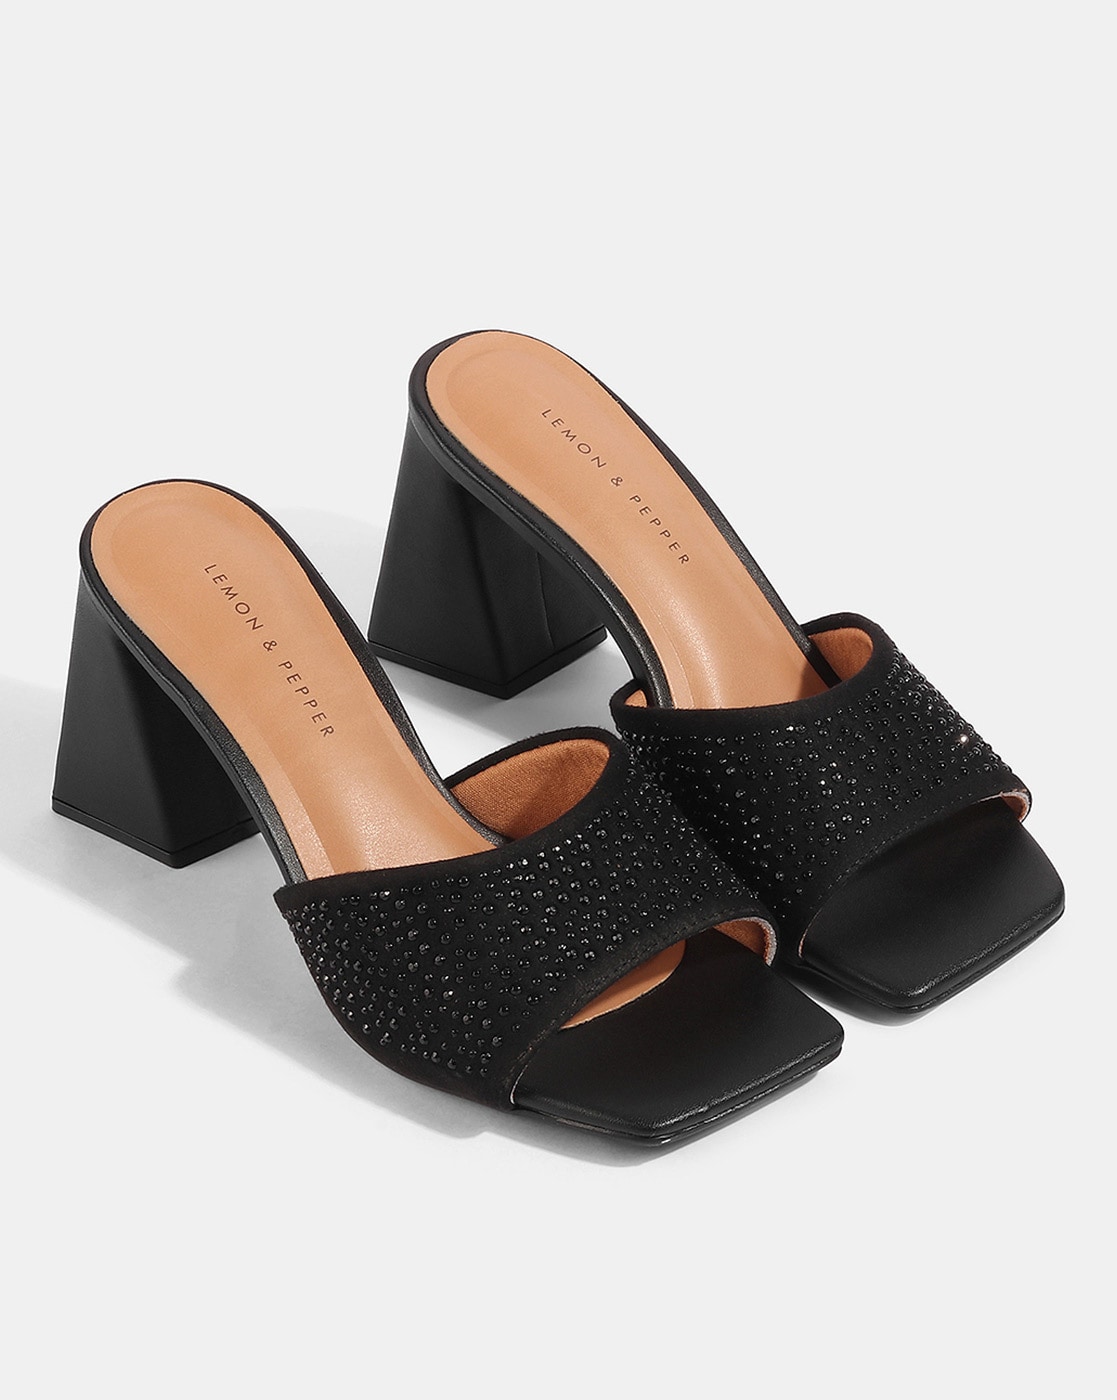 Lemon & Pepper heels_women : Buy Lemon & Pepper Gold Solid Heels Online |  Nykaa Fashion